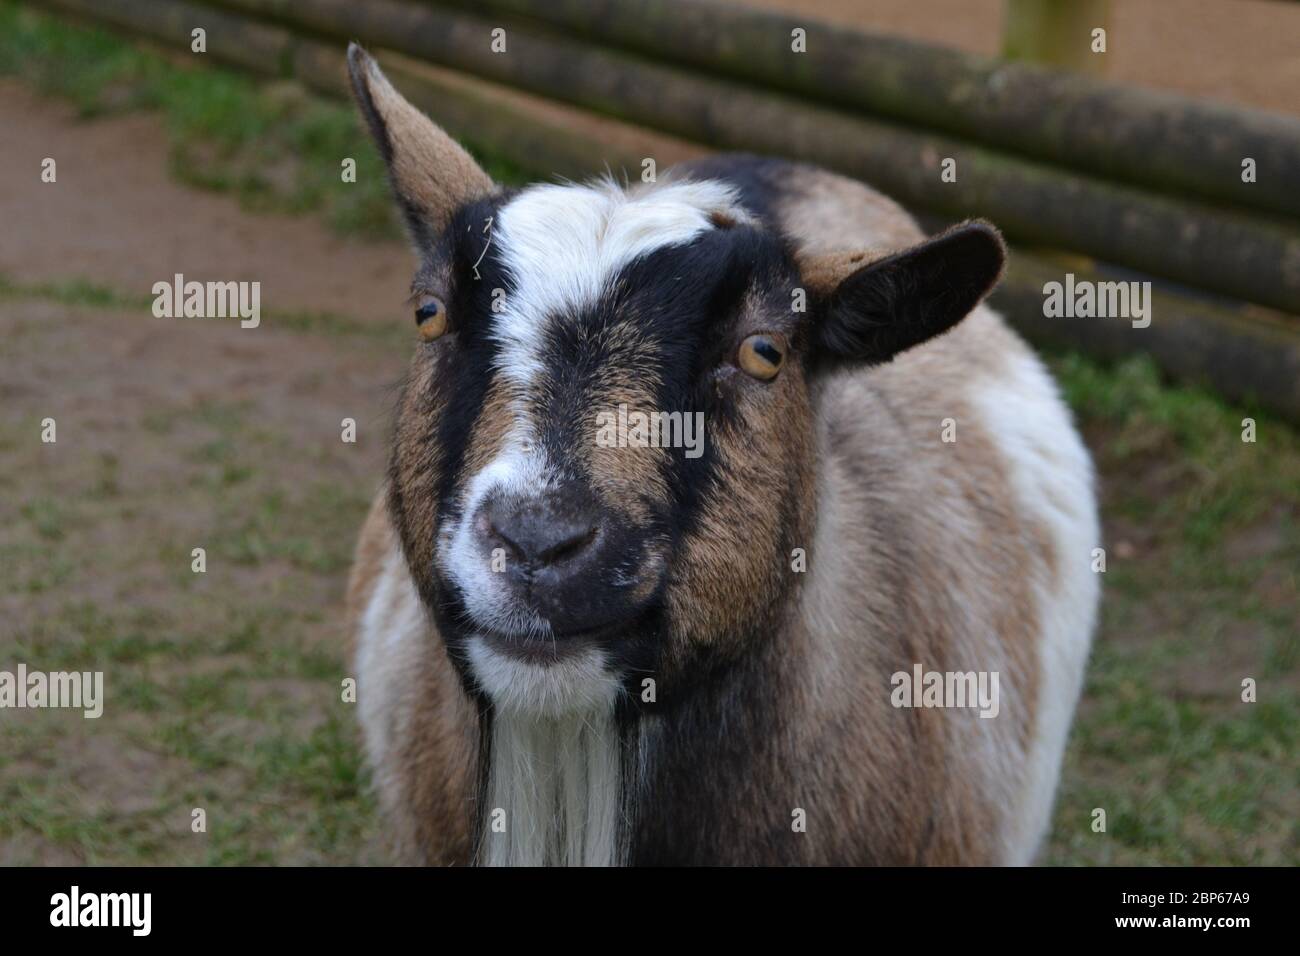 Eine eifrige Ziege, die die Kamera anschaut - kecke Ohren, weißer Bart und schwarze, weiße und braune Gesichtszüge. Stockfoto